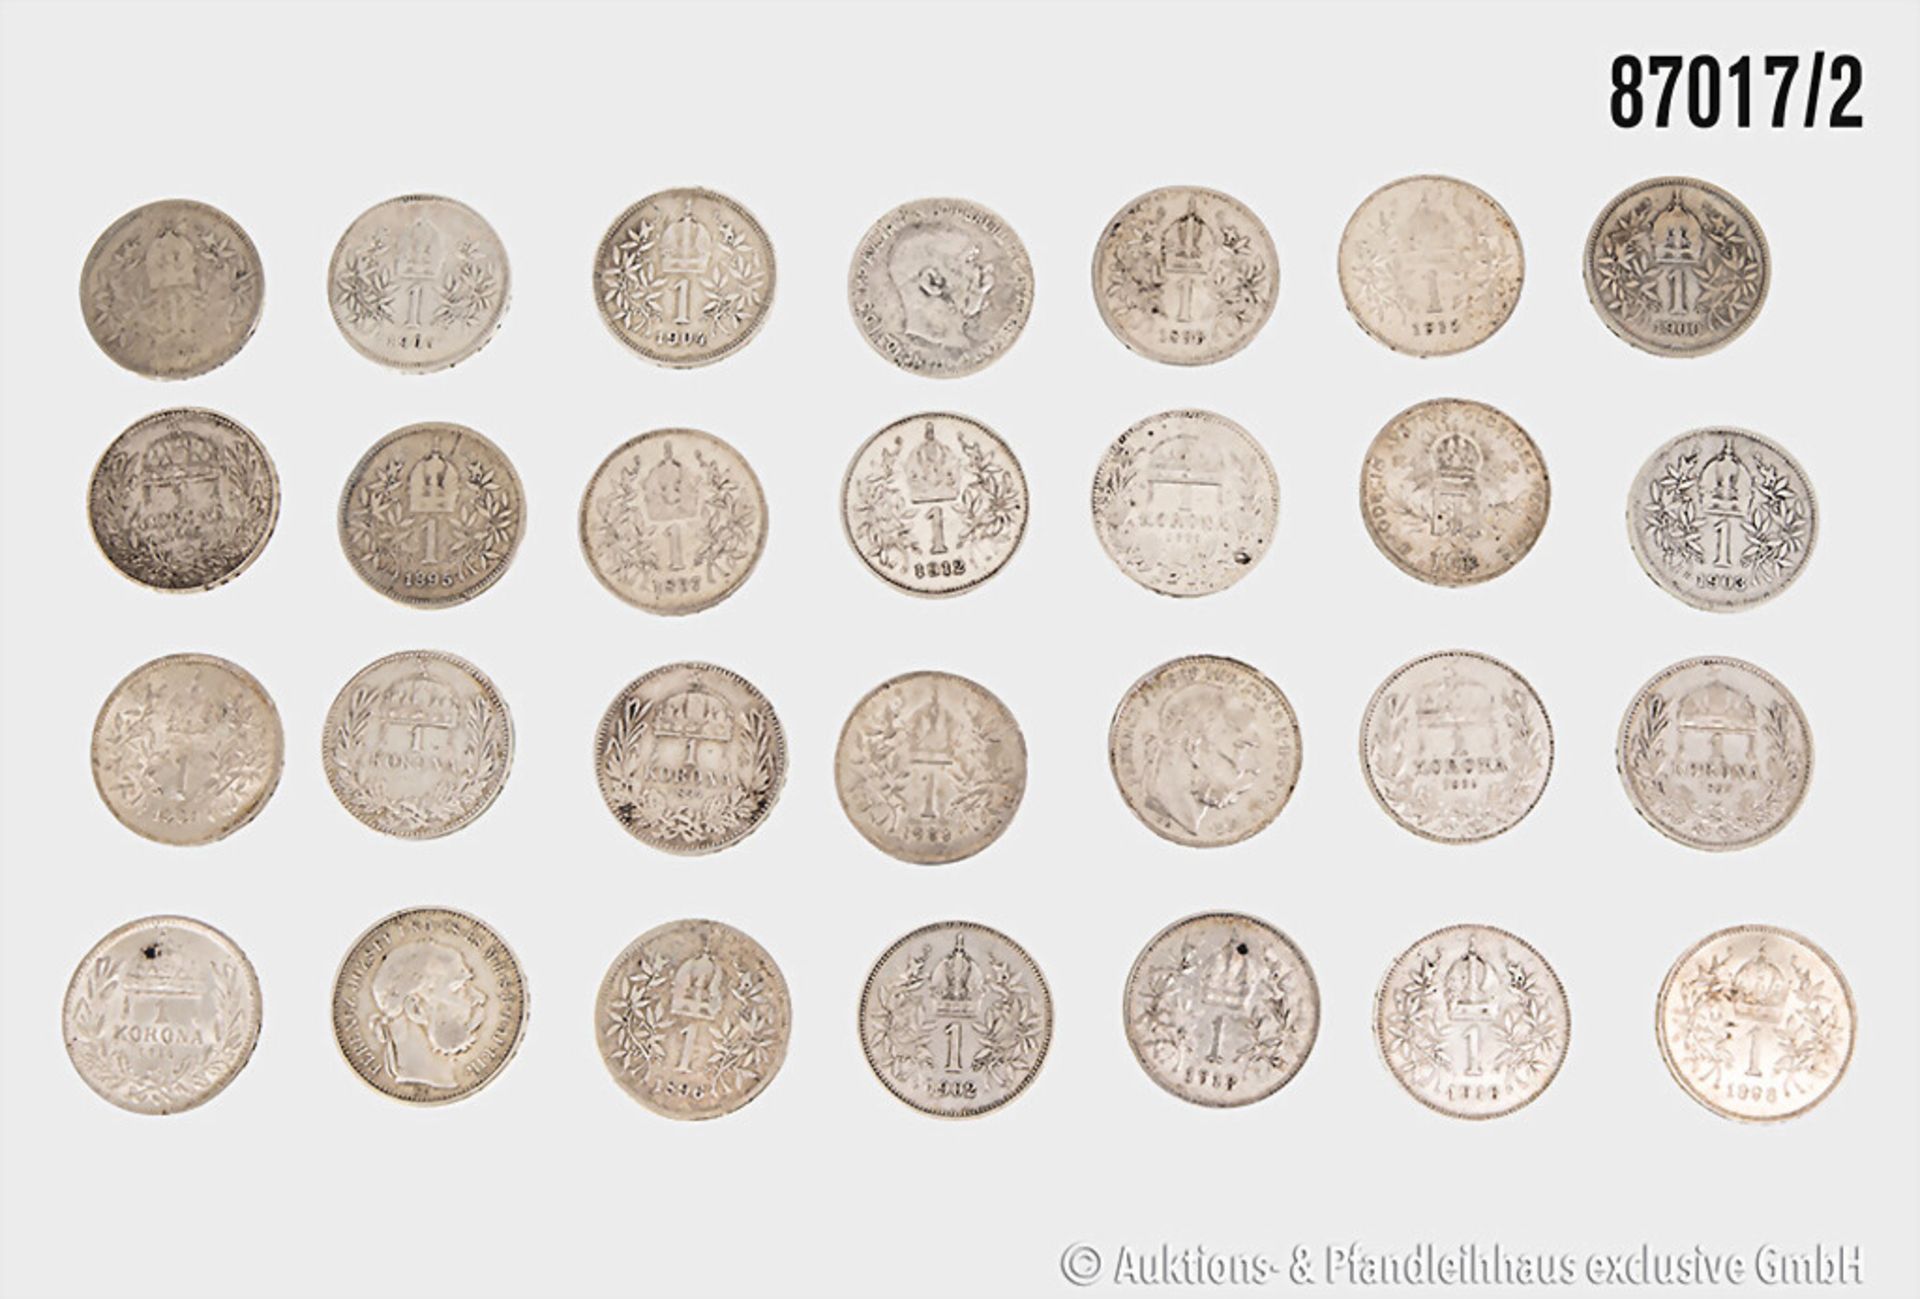 Konv. 28 Münzen Österreich/Ungarn, 1 Krone von 1892 bis 1916, fast alle Jahrgänge, ... - Bild 2 aus 2